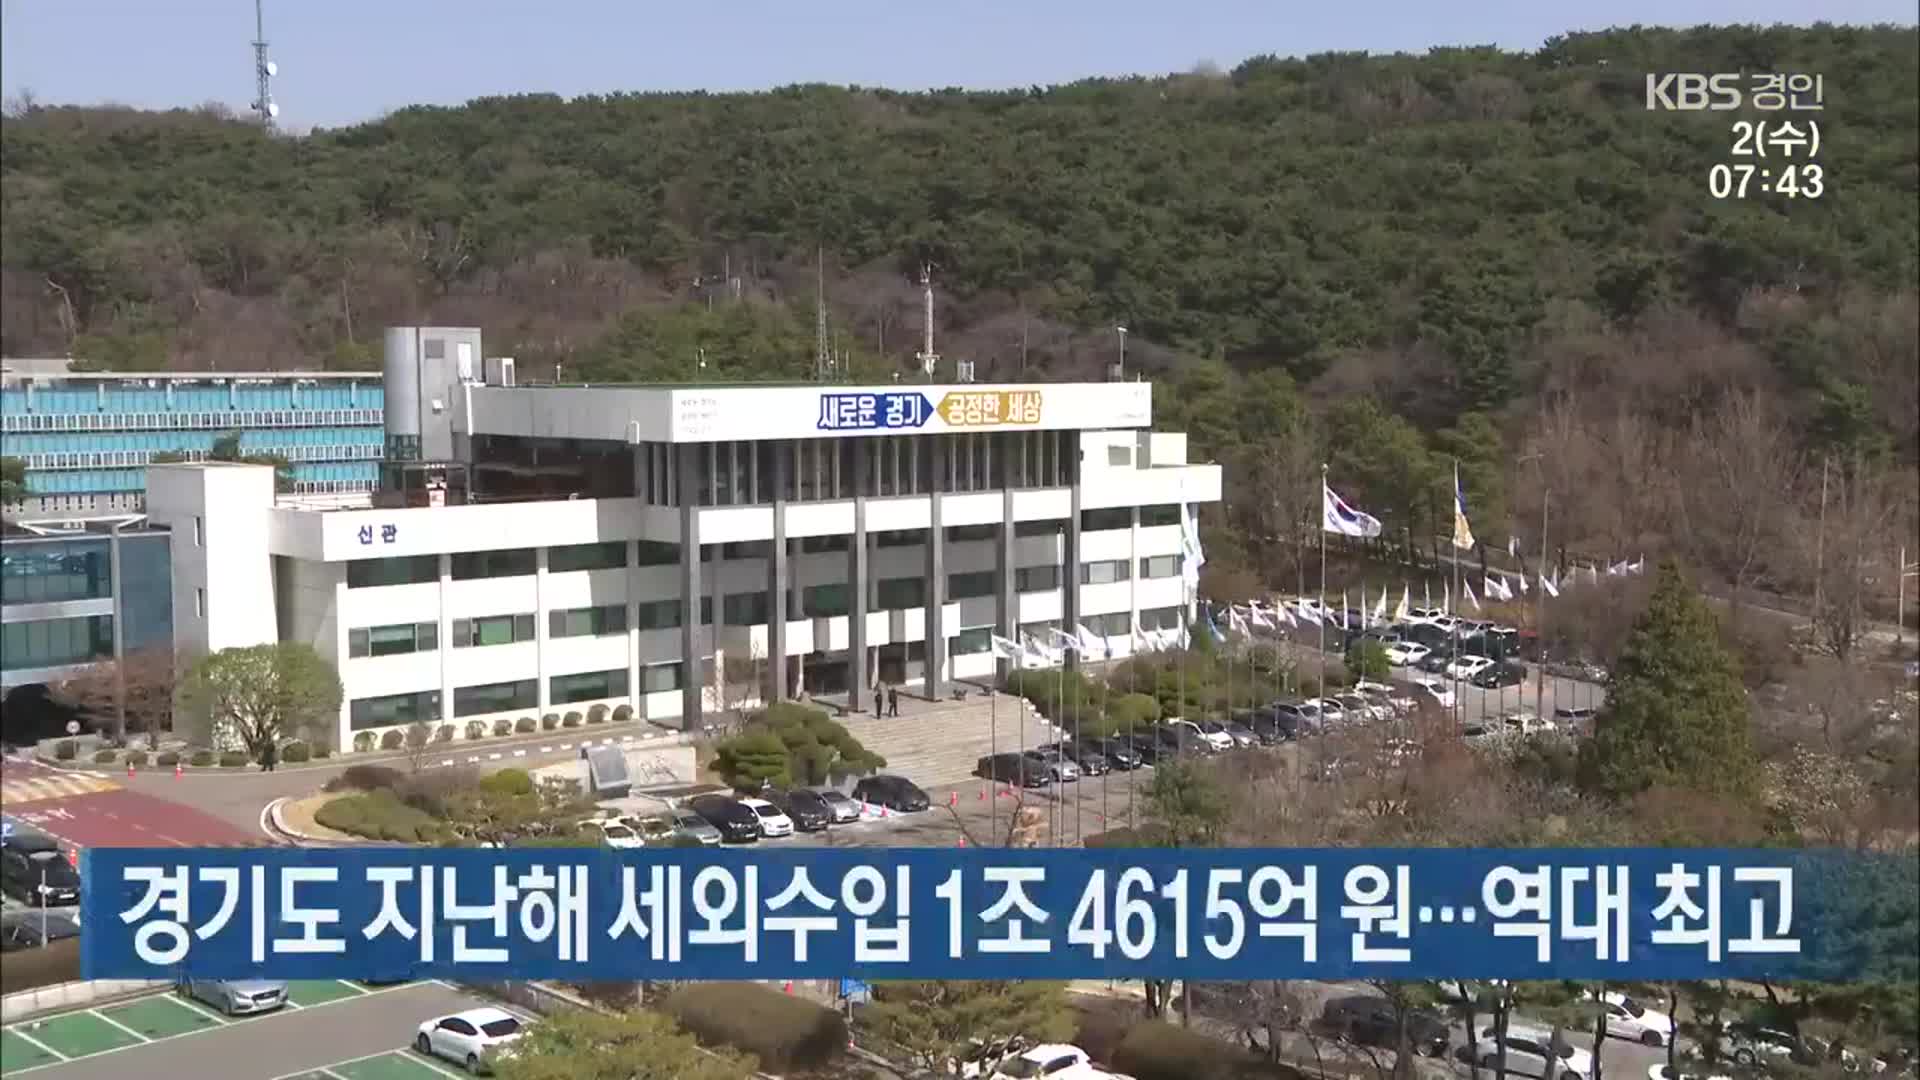 경기도 지난해 세외수입 1조 4615억 원…역대 최고